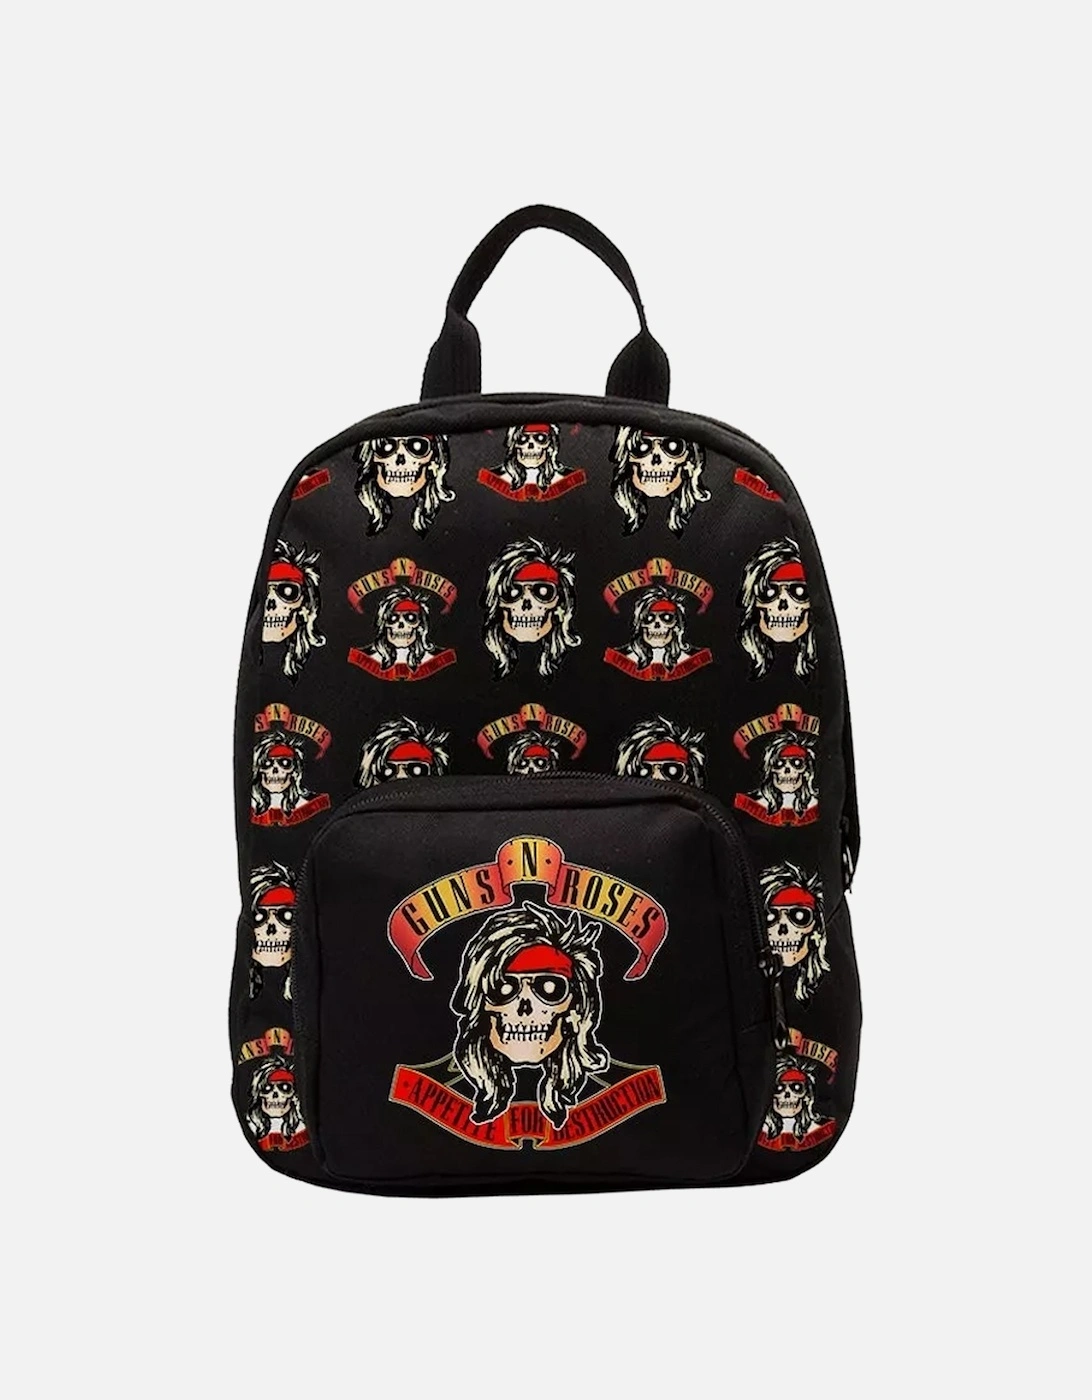 Appetite Guns N Roses Mini Backpack, 2 of 1